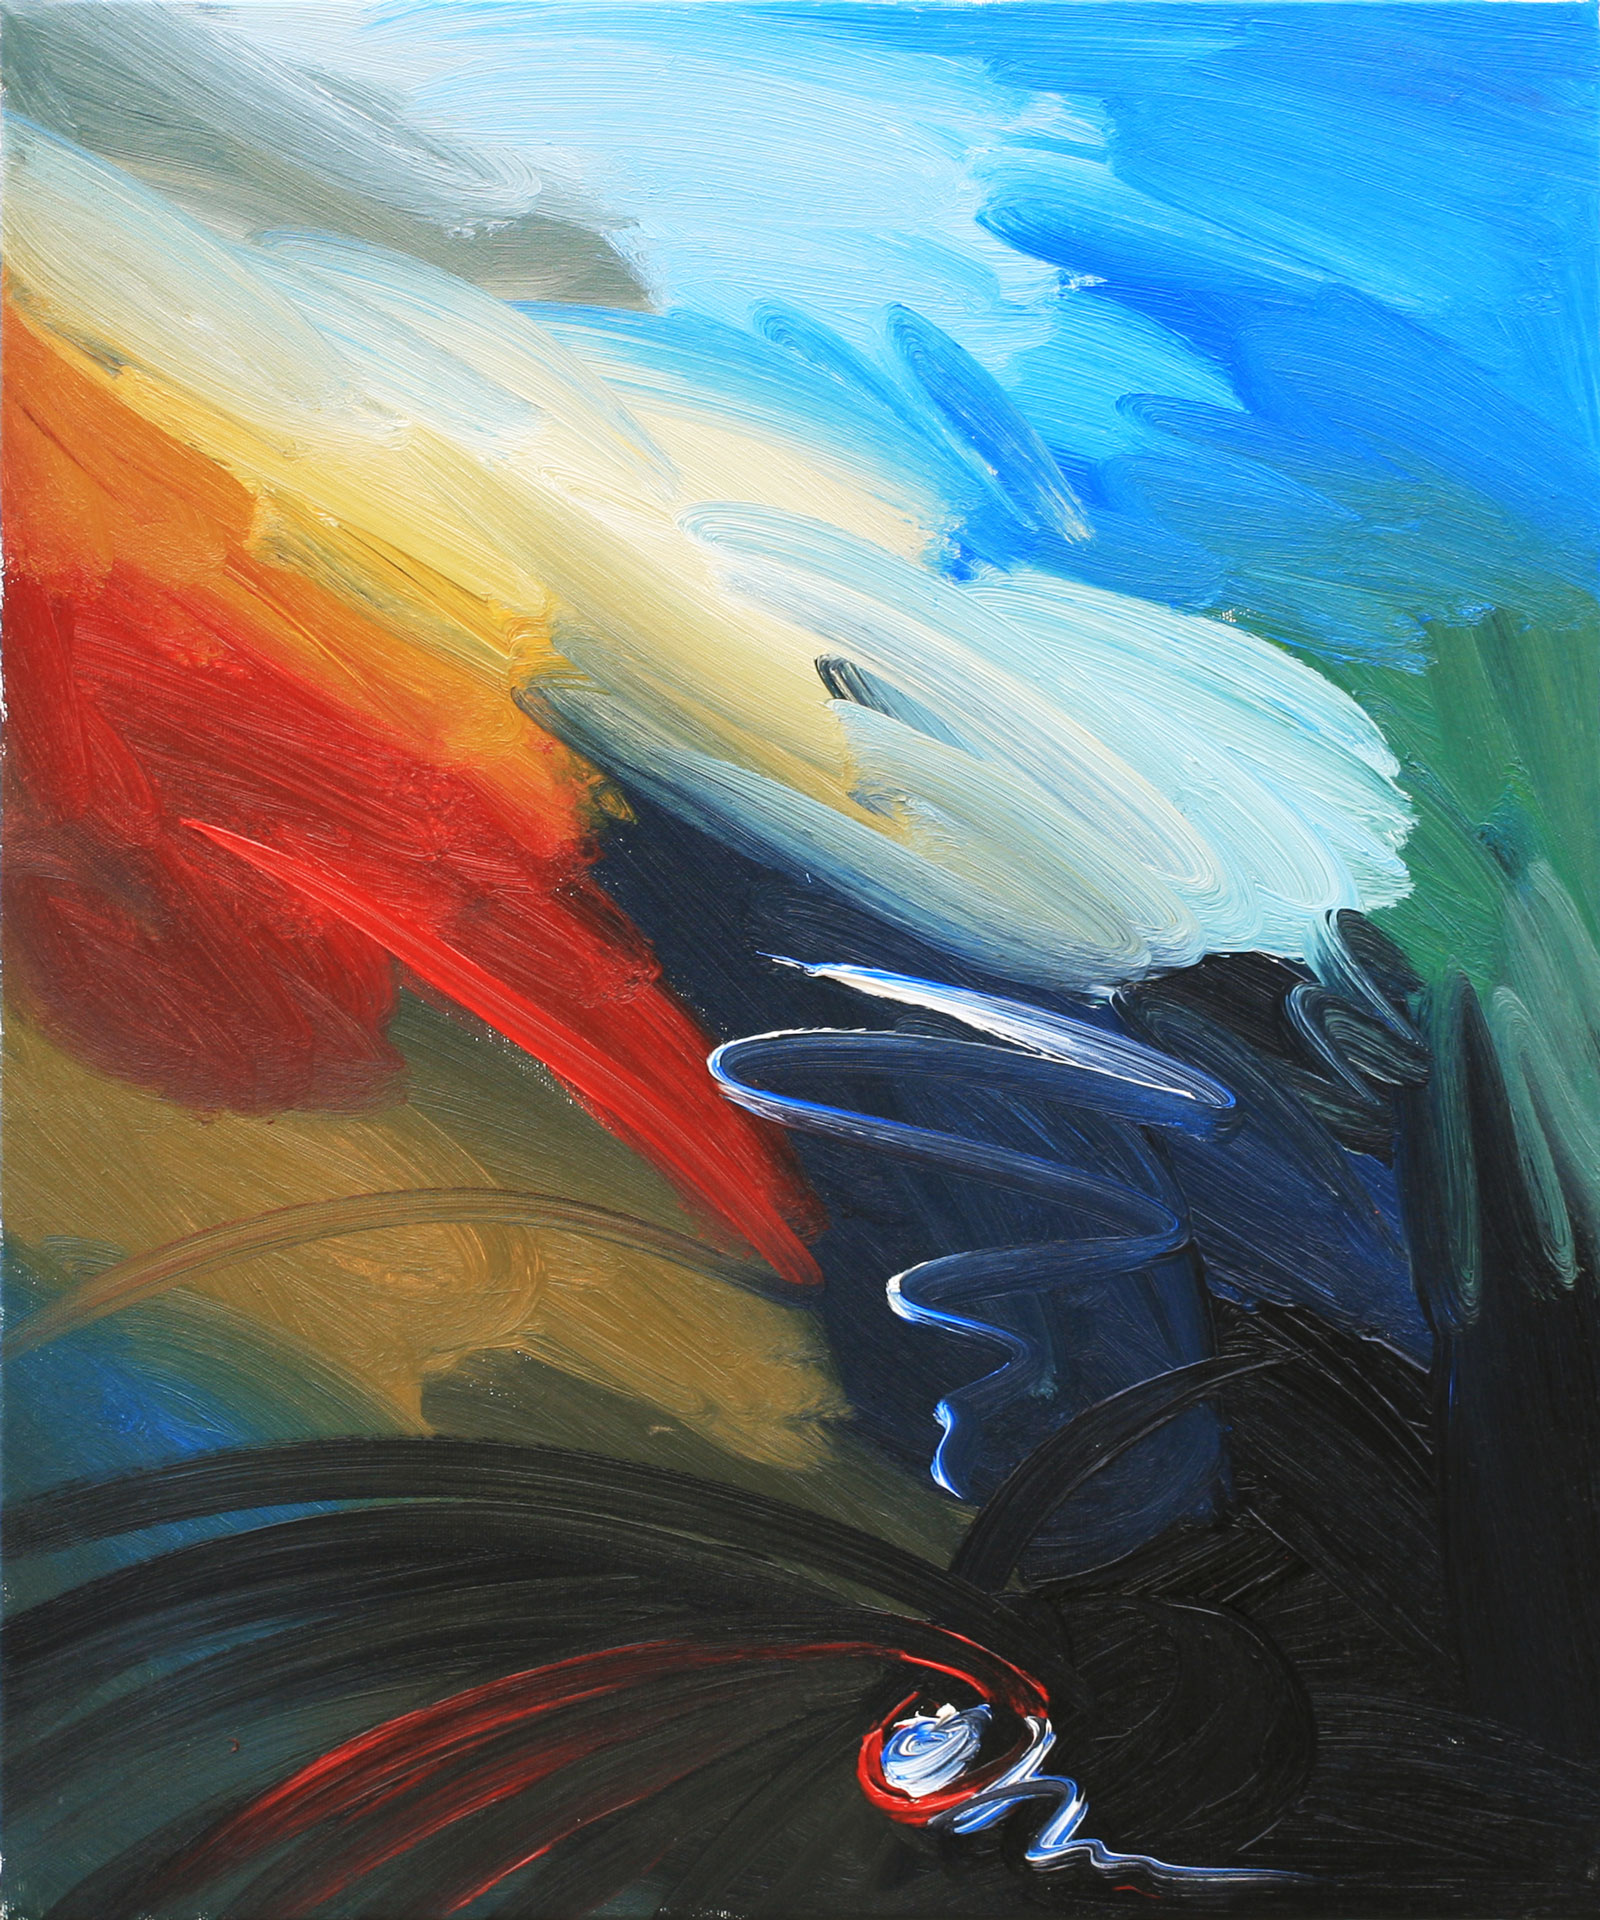 Travaglio e nascita, 2011, olio su tela, 60 x 50 cm